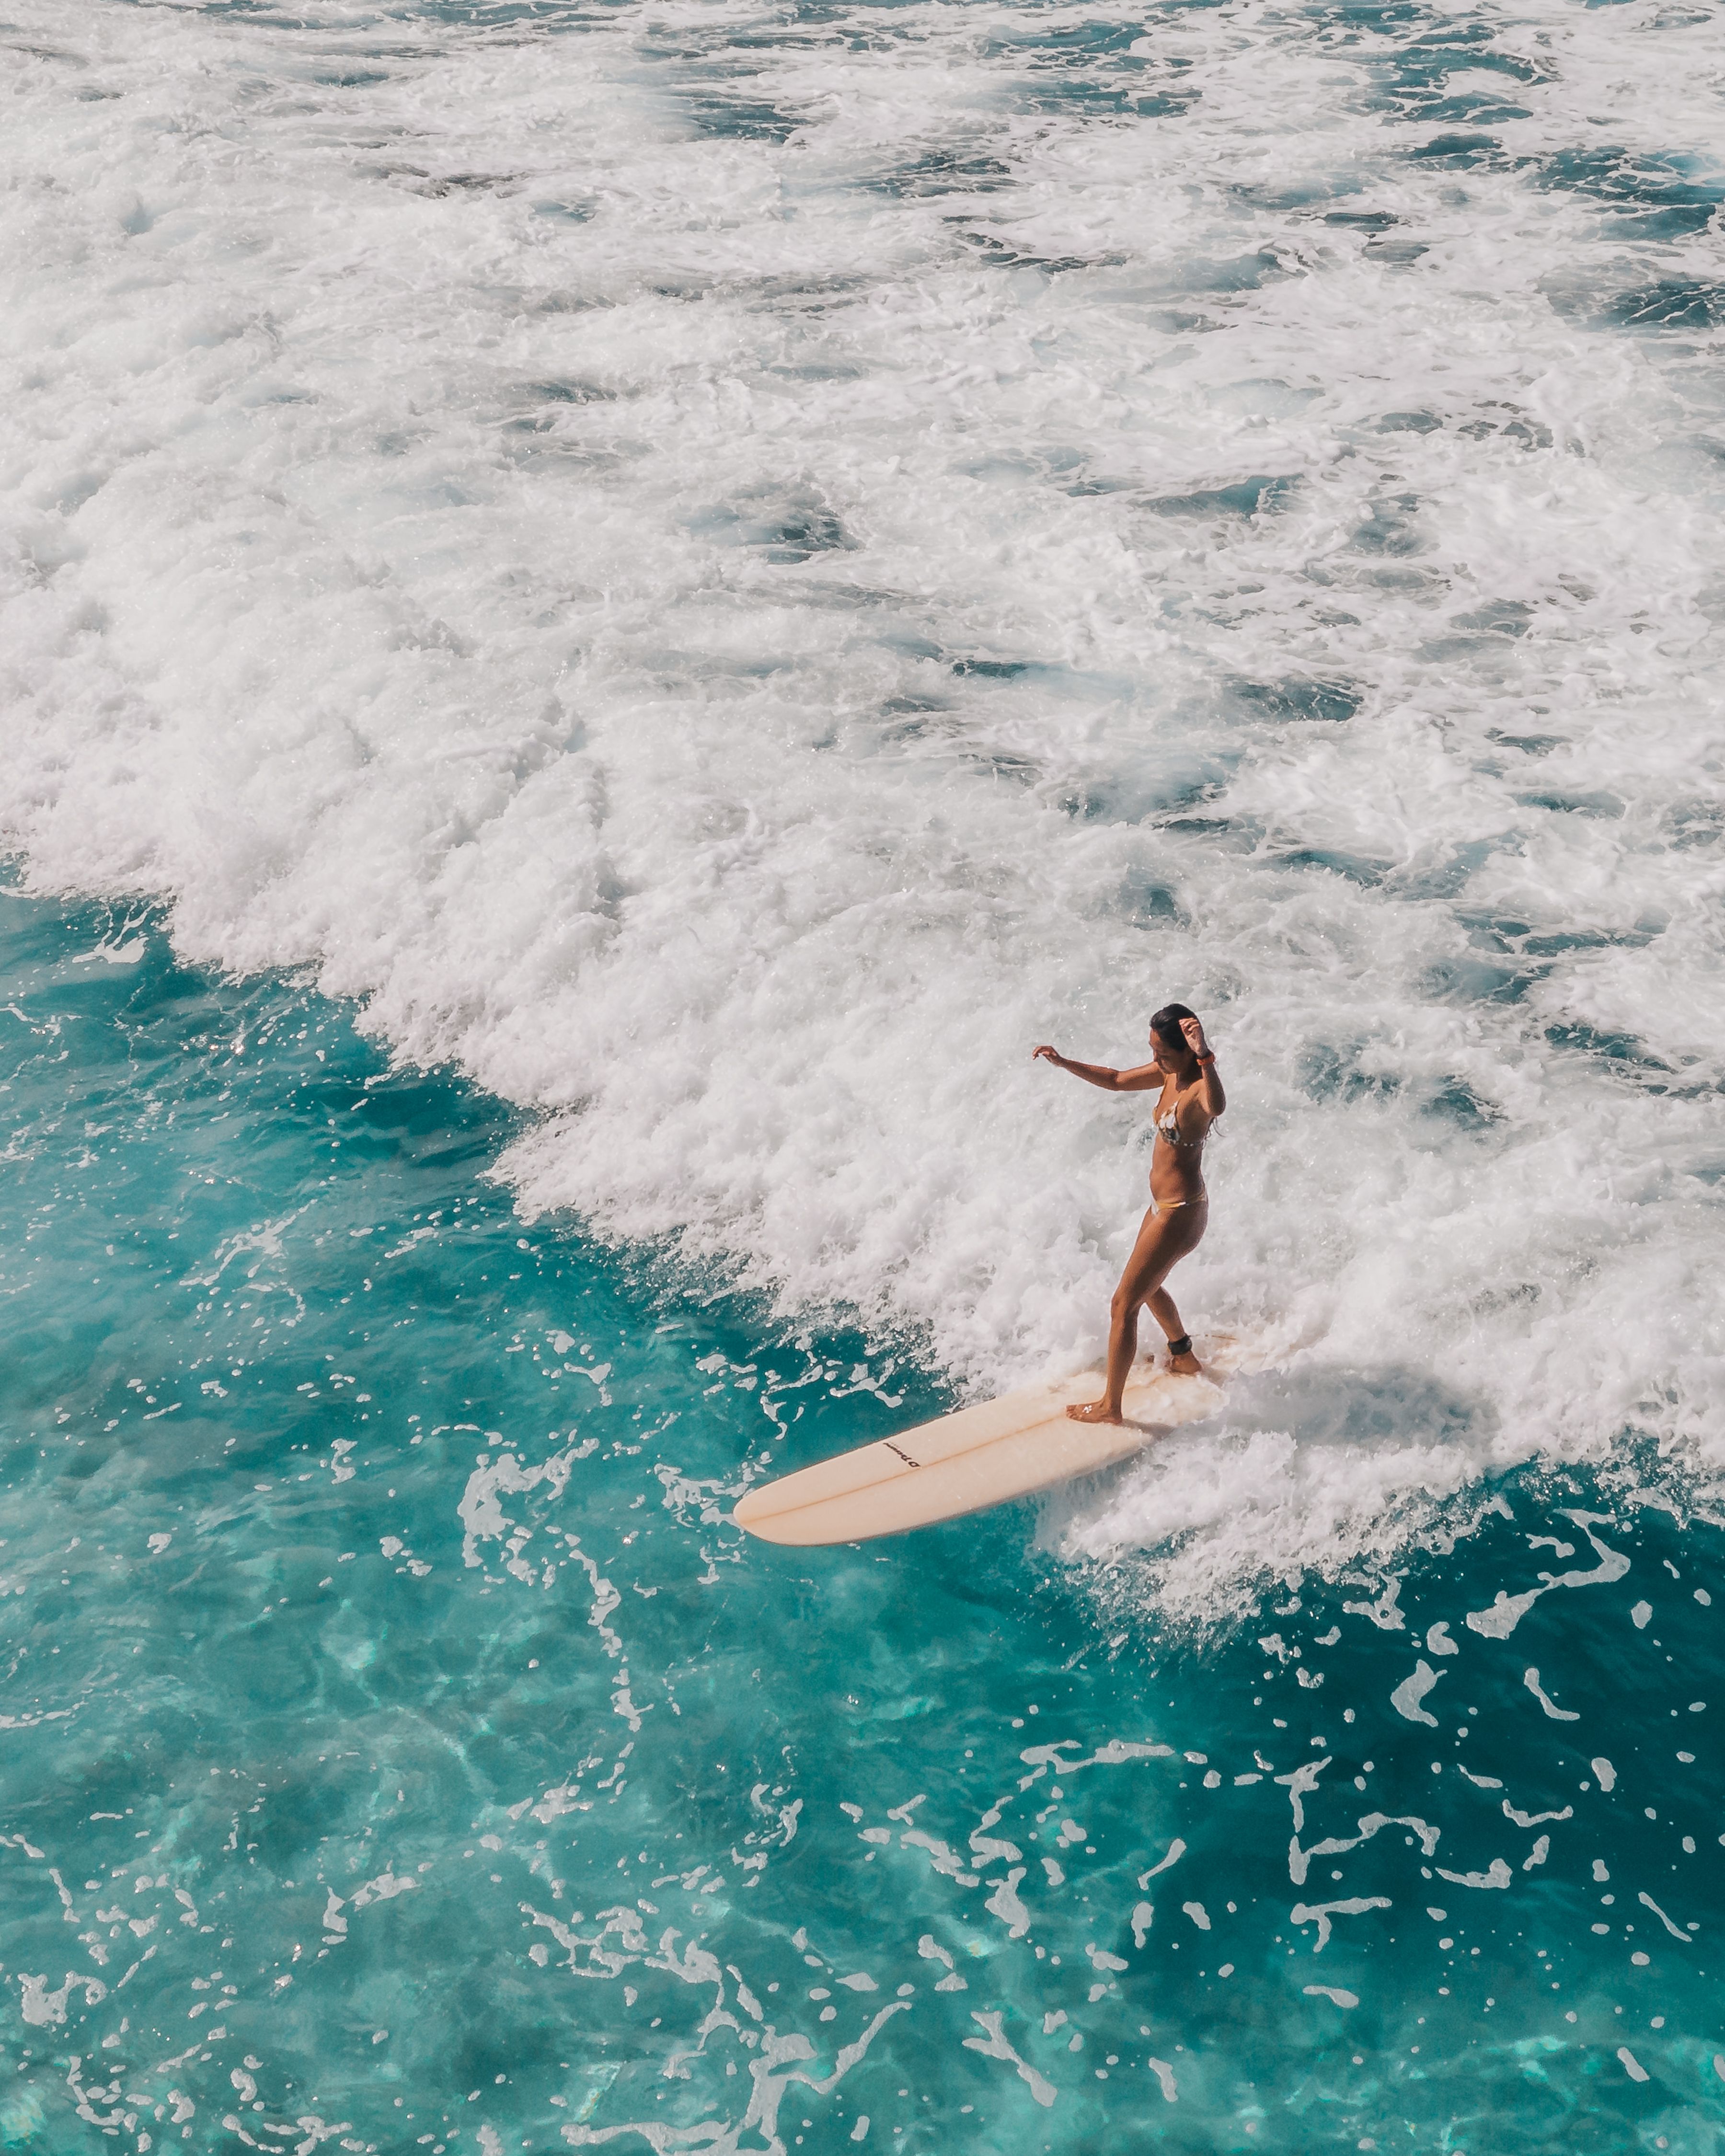 Woman in Black Bikini Surfing on Sea Waves · Free